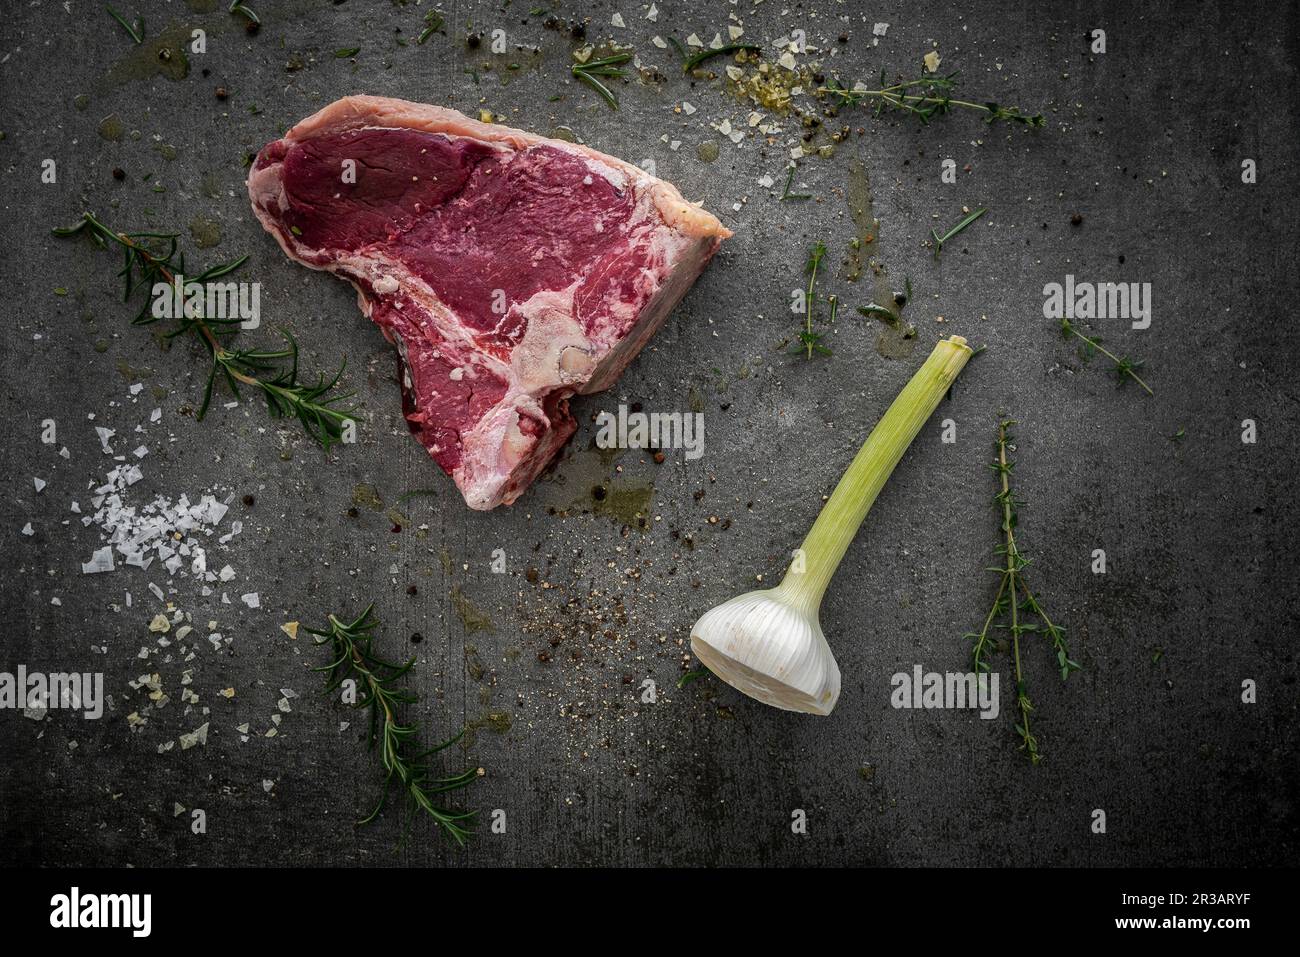 Rohes T-Bone-Steak, Rosmarin, Thymian, halbierte Knoblauchknolle, Gewürze und Meersalz Stockfoto